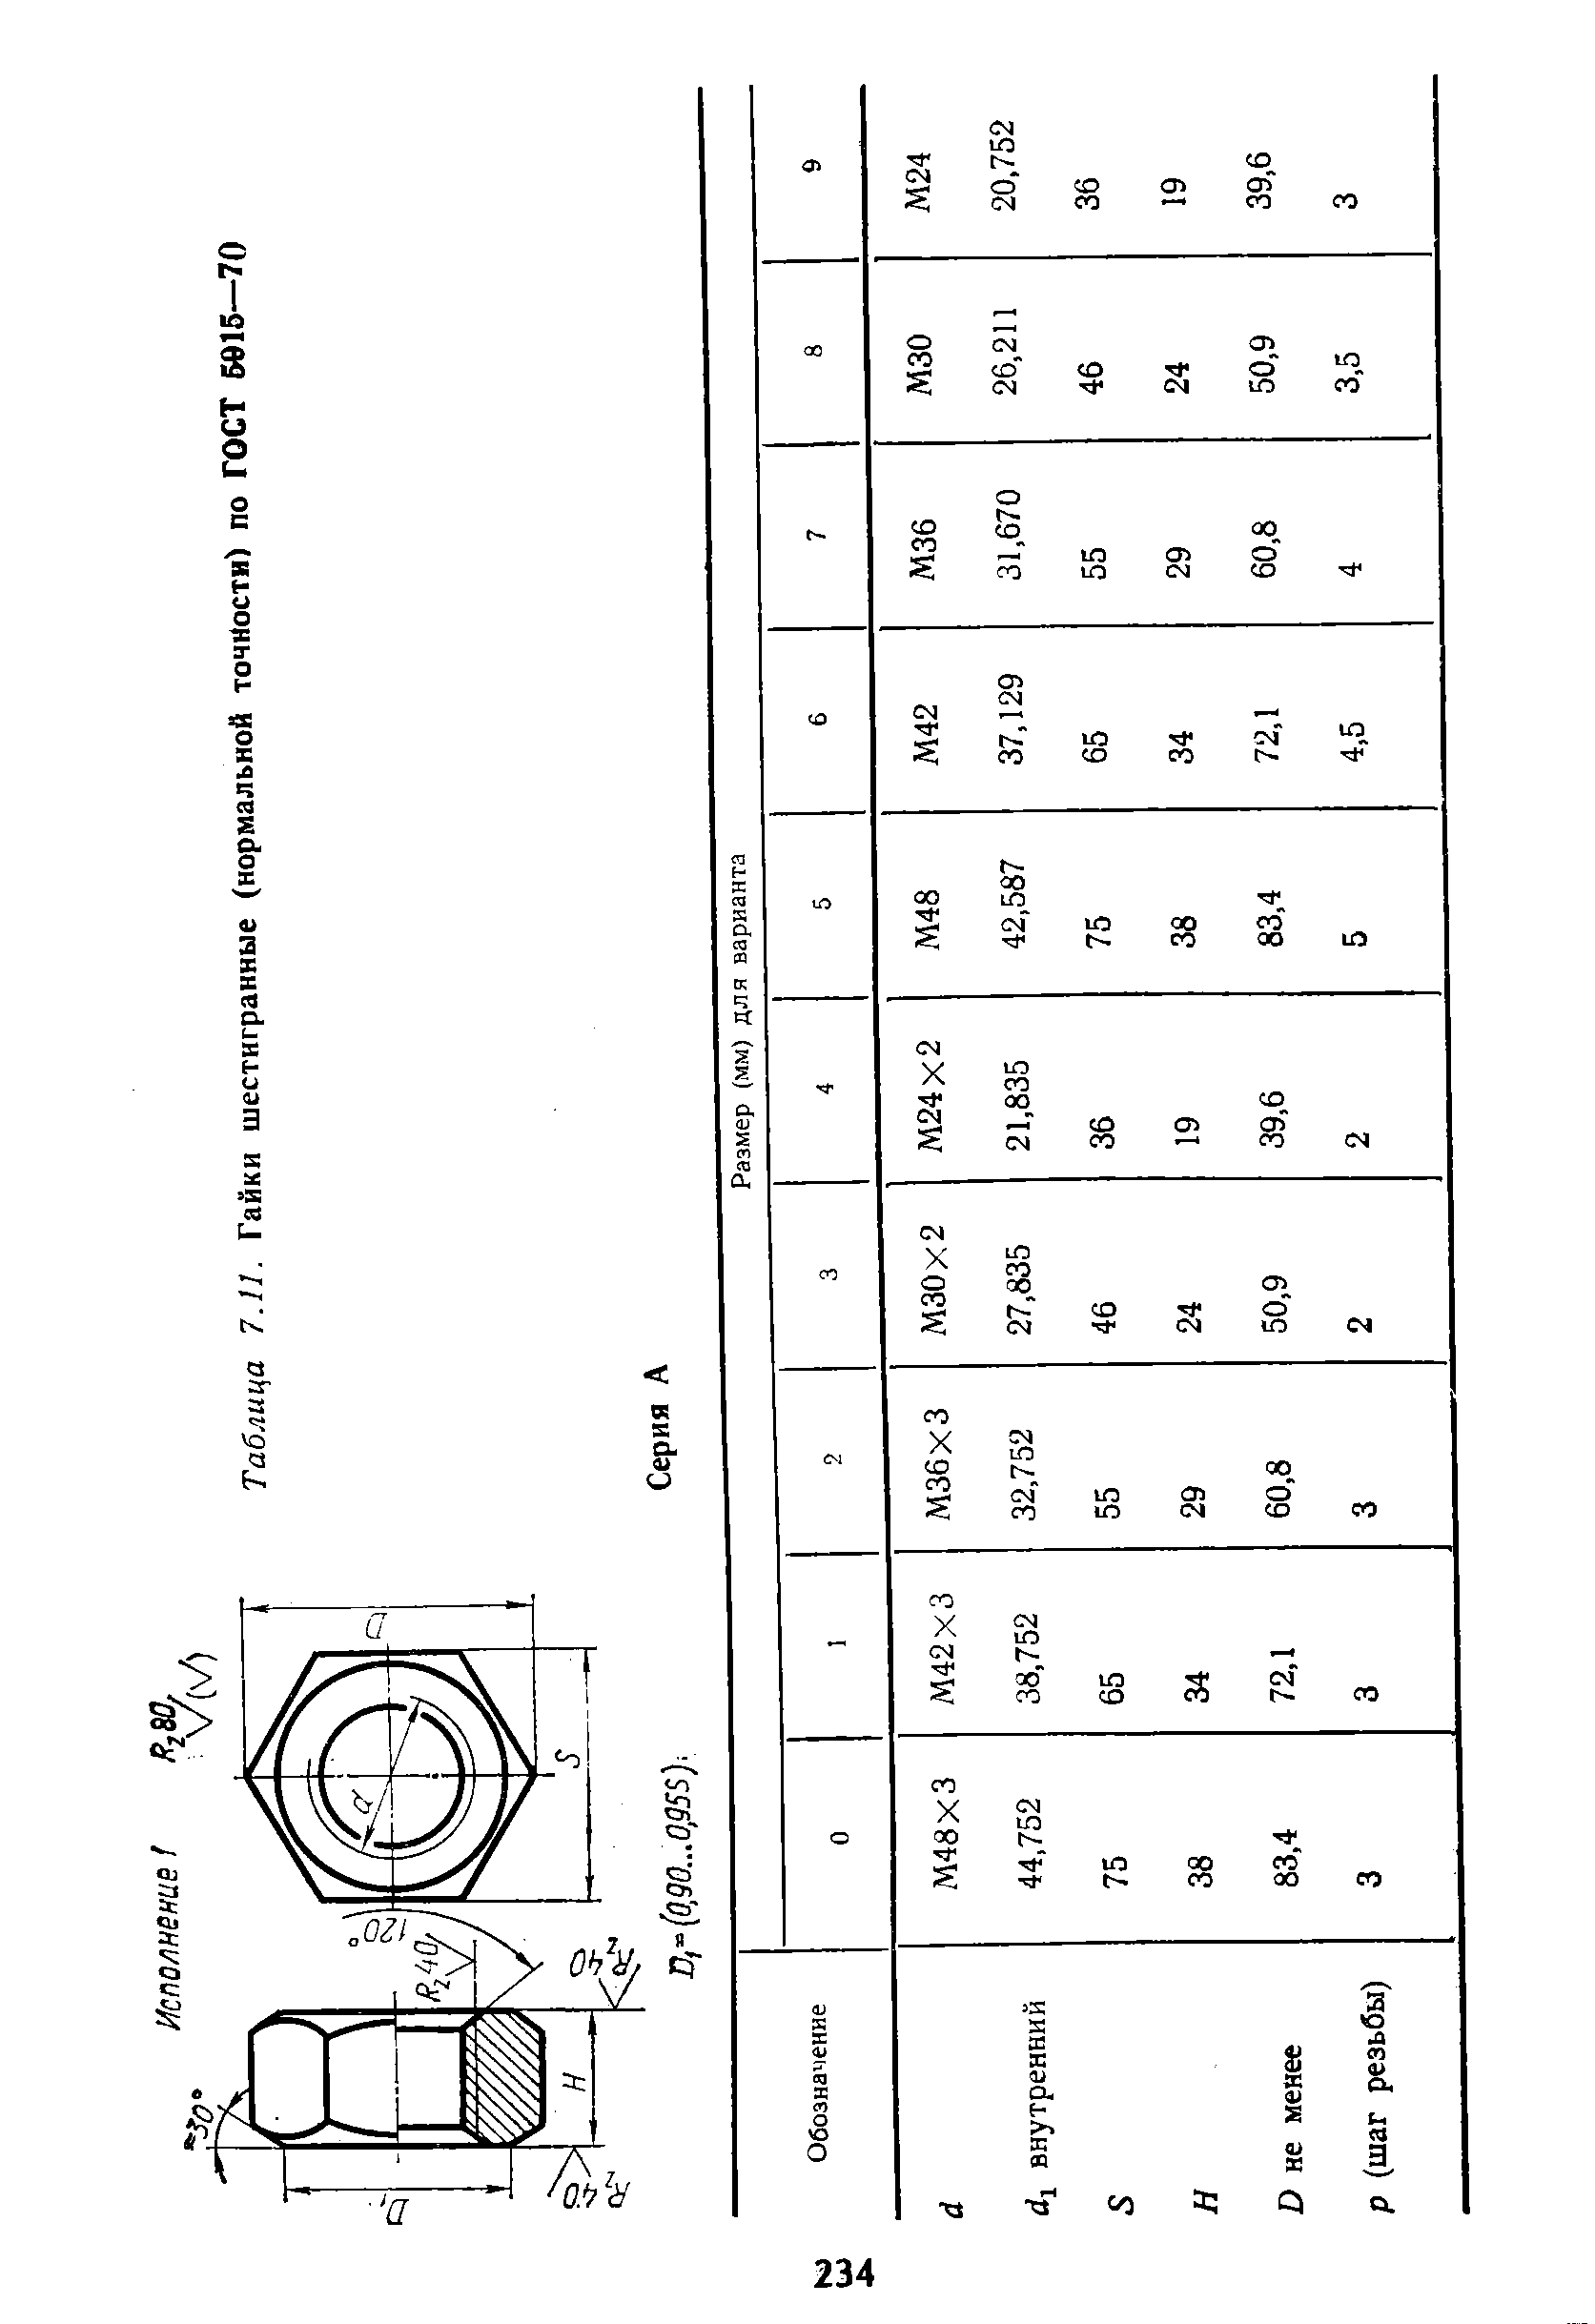 Таблица 7.11. Гайки шестигранные (нормальной точности) по ГОСТ 5015—70
